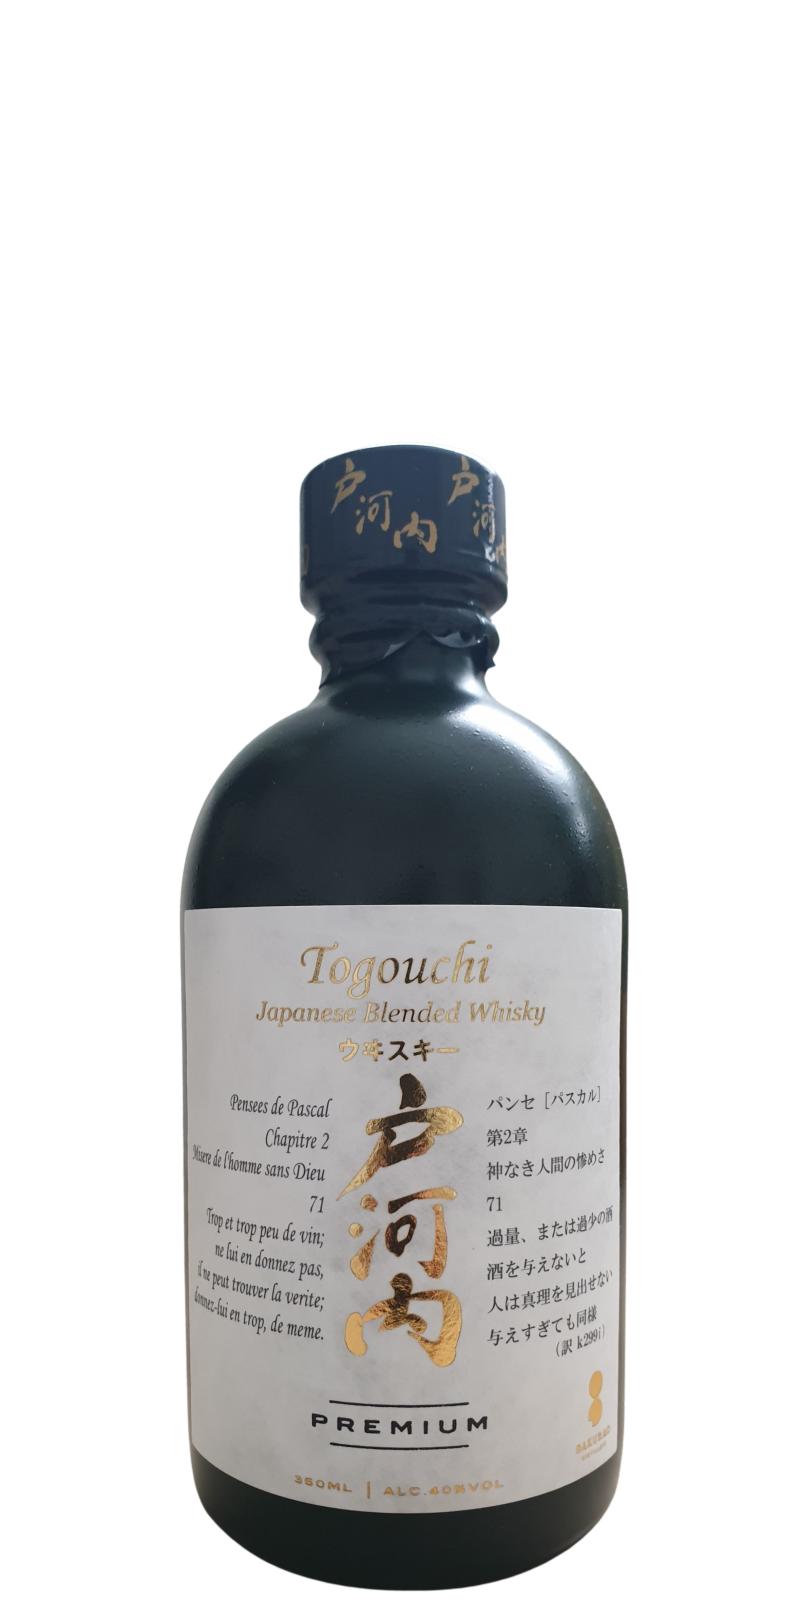 Togouchi Japanese Blended Whisky Premium 40% 350ml